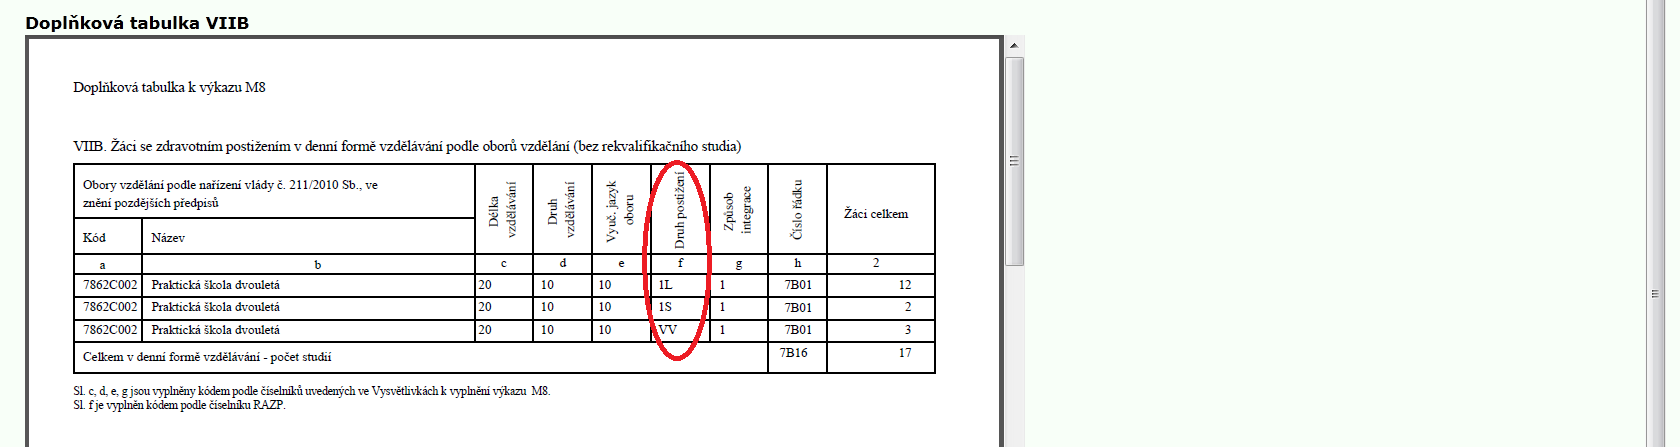 27 Doplňková tabulka VIIB jen SŠ Tlačítko se nabídne, pokud je na úvodní stránce vybrán druh školy SŠ.